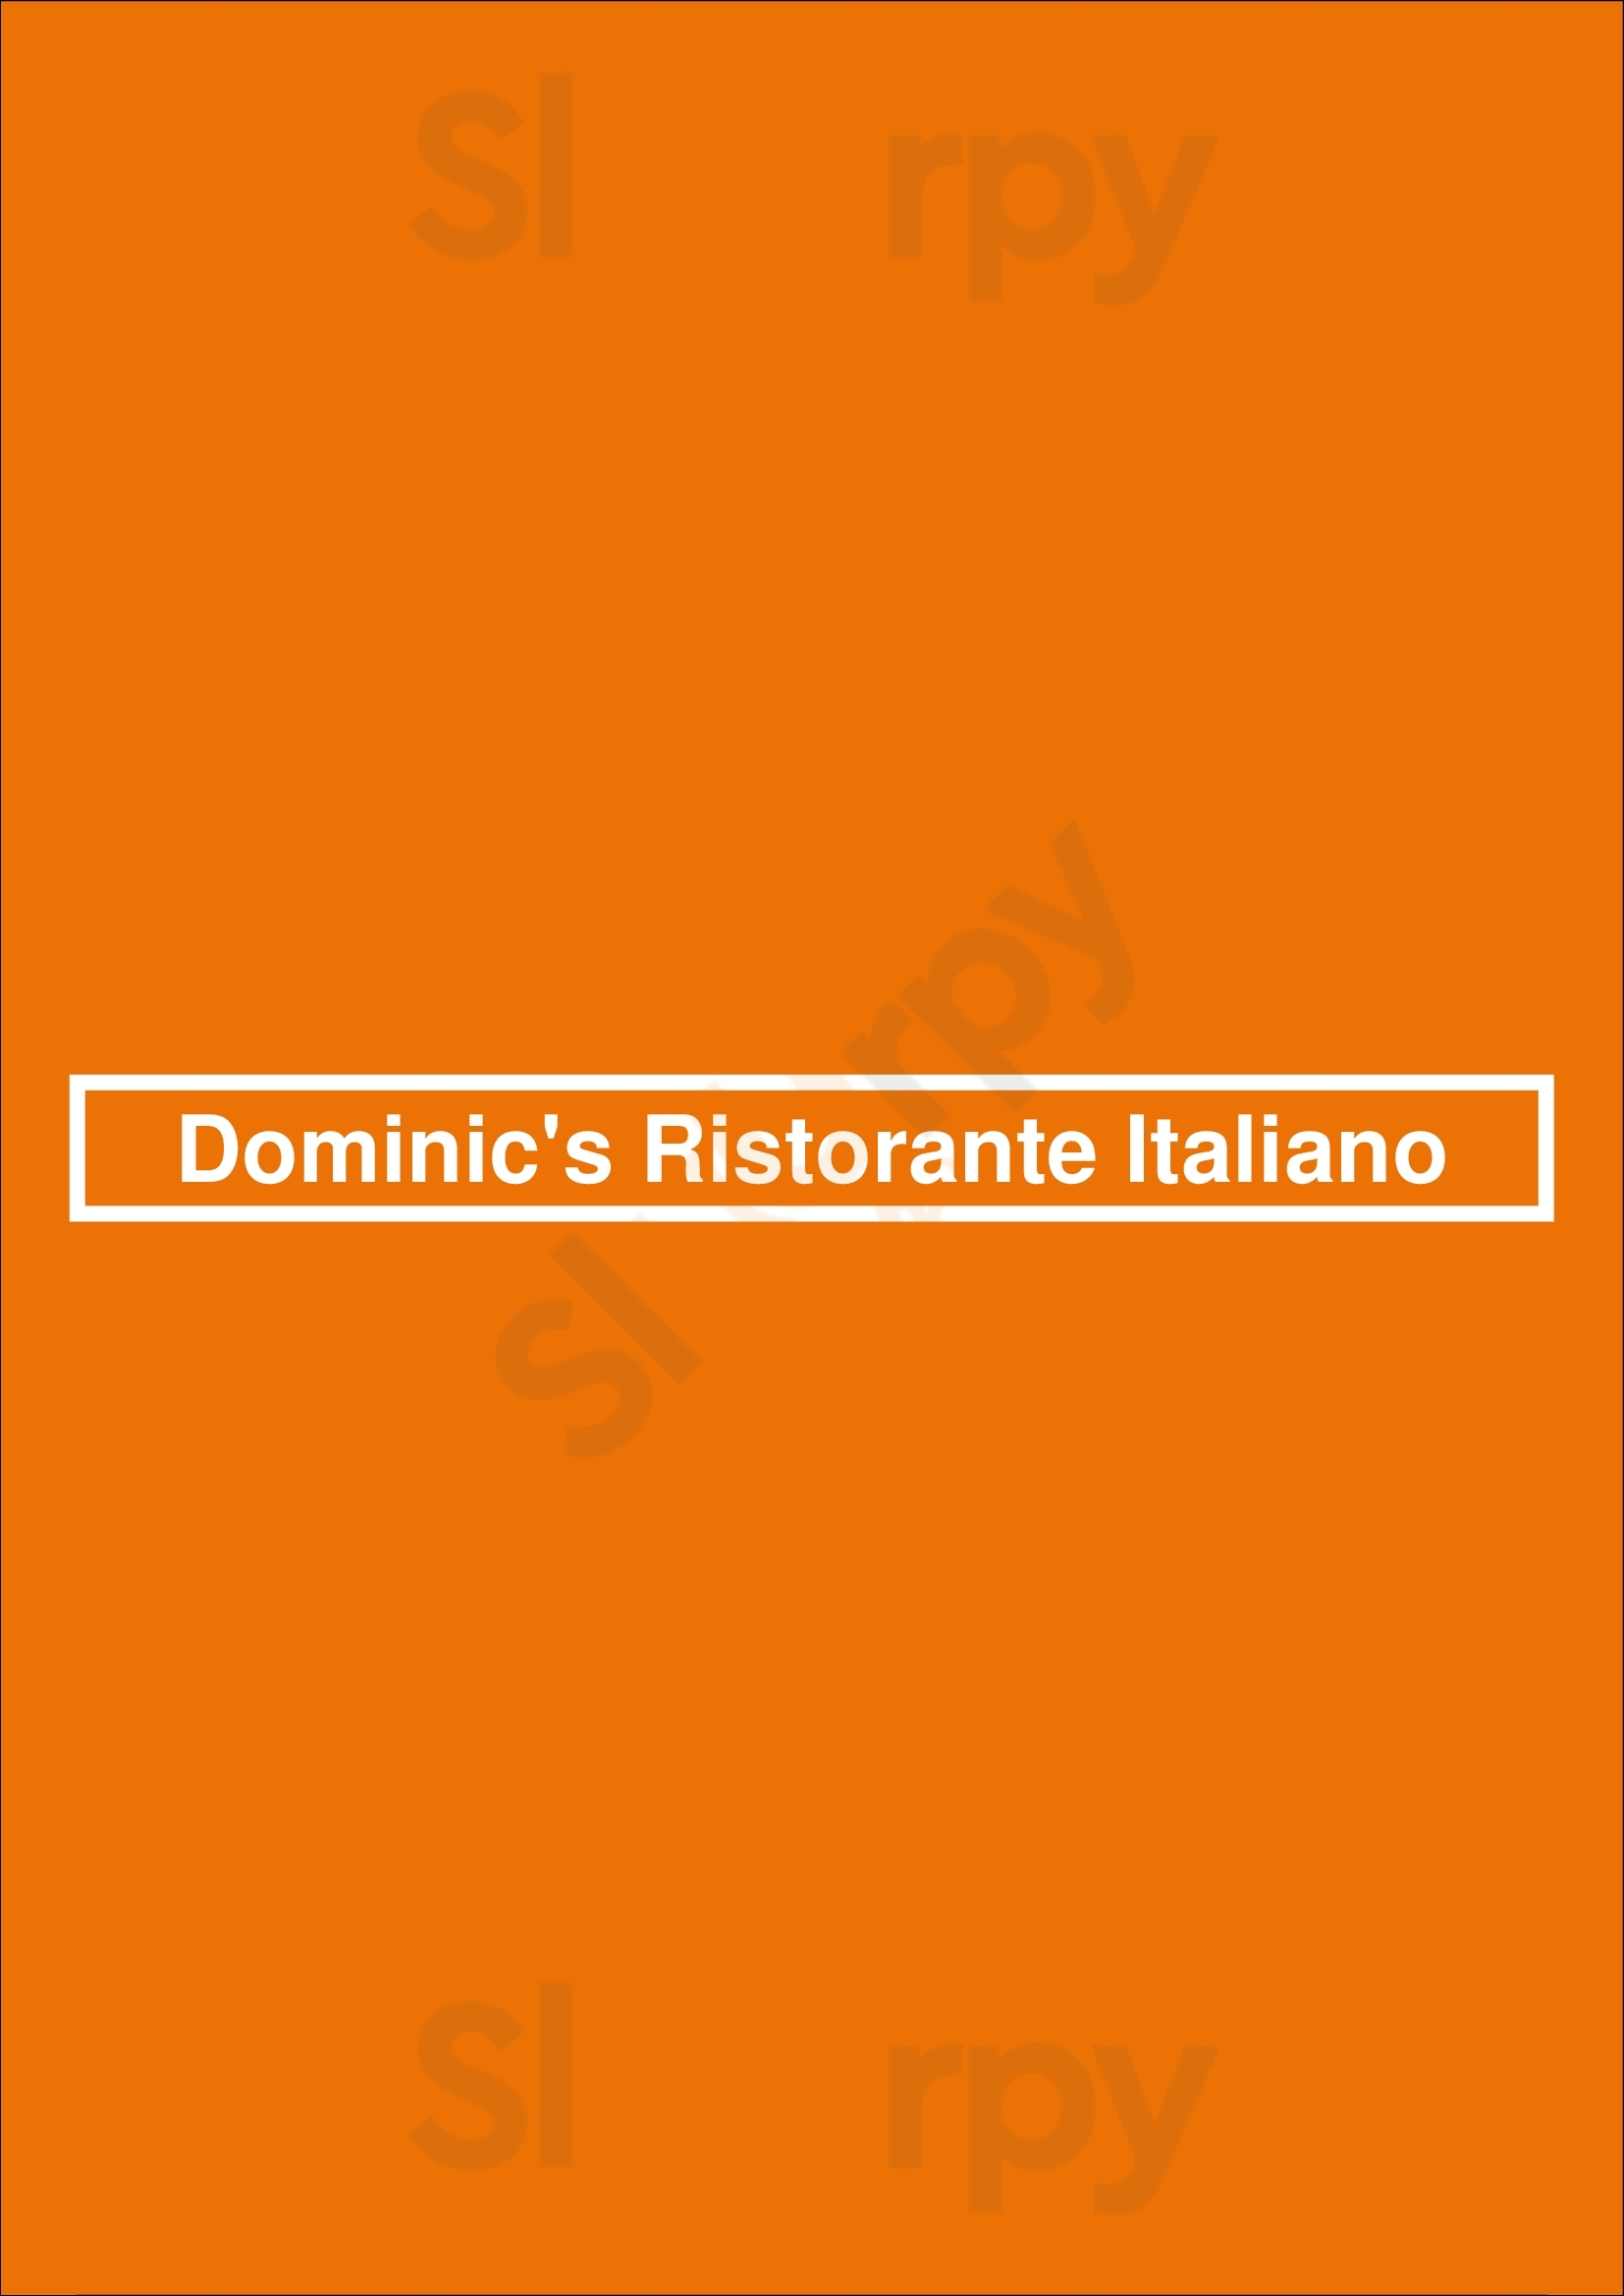 Dominic's Ristorante Italiano Cypress Menu - 1